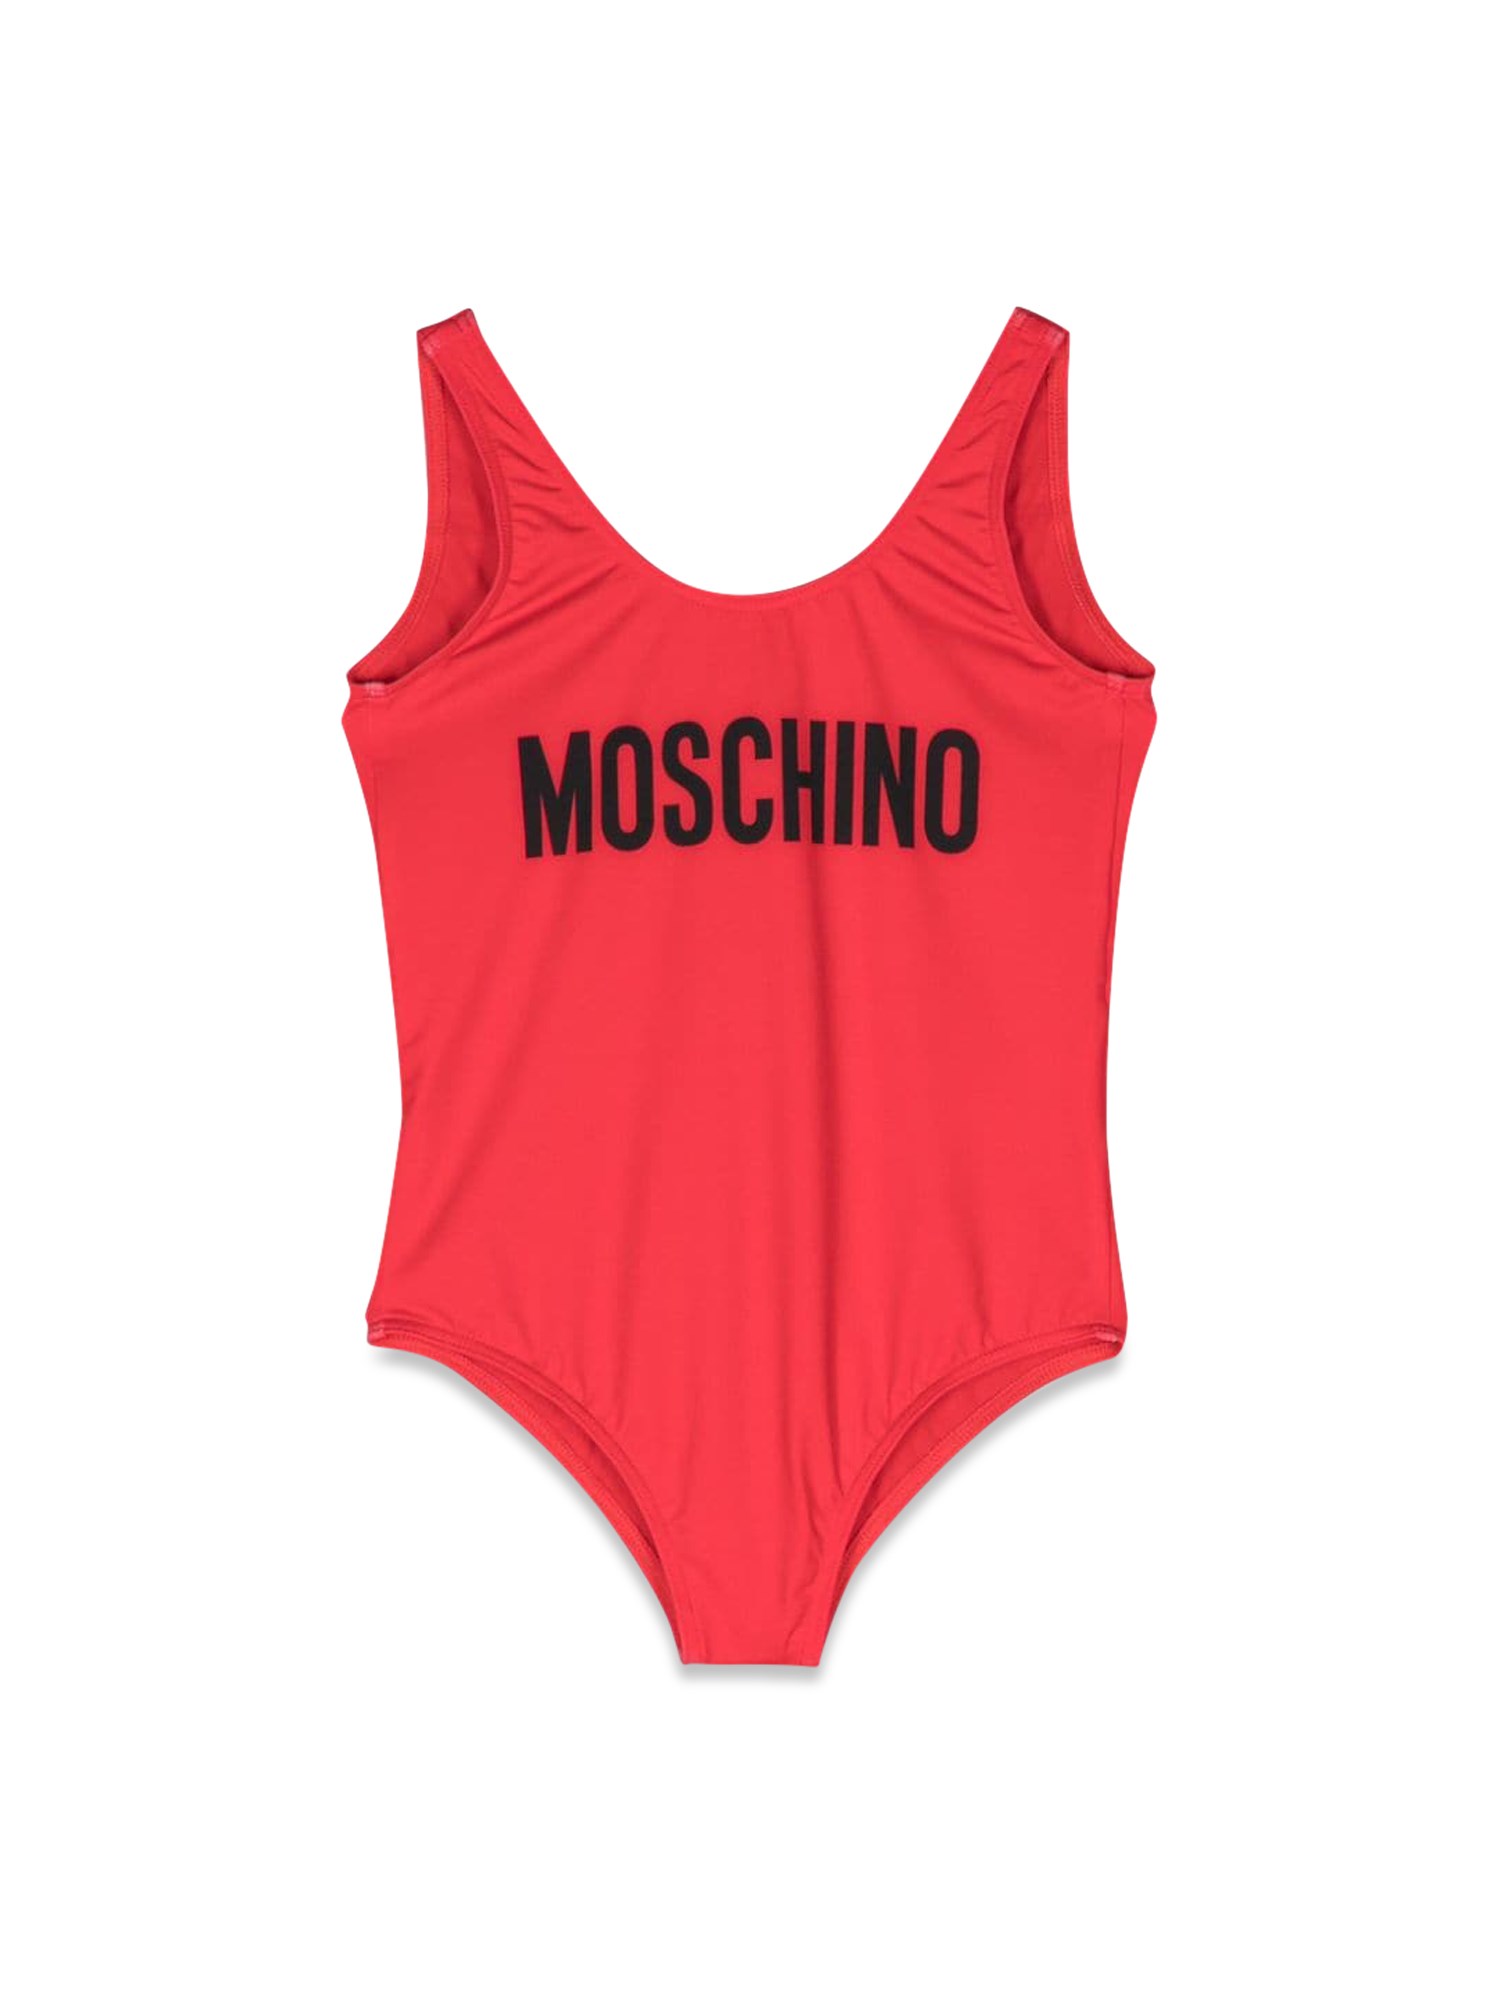 moschino swimsuit